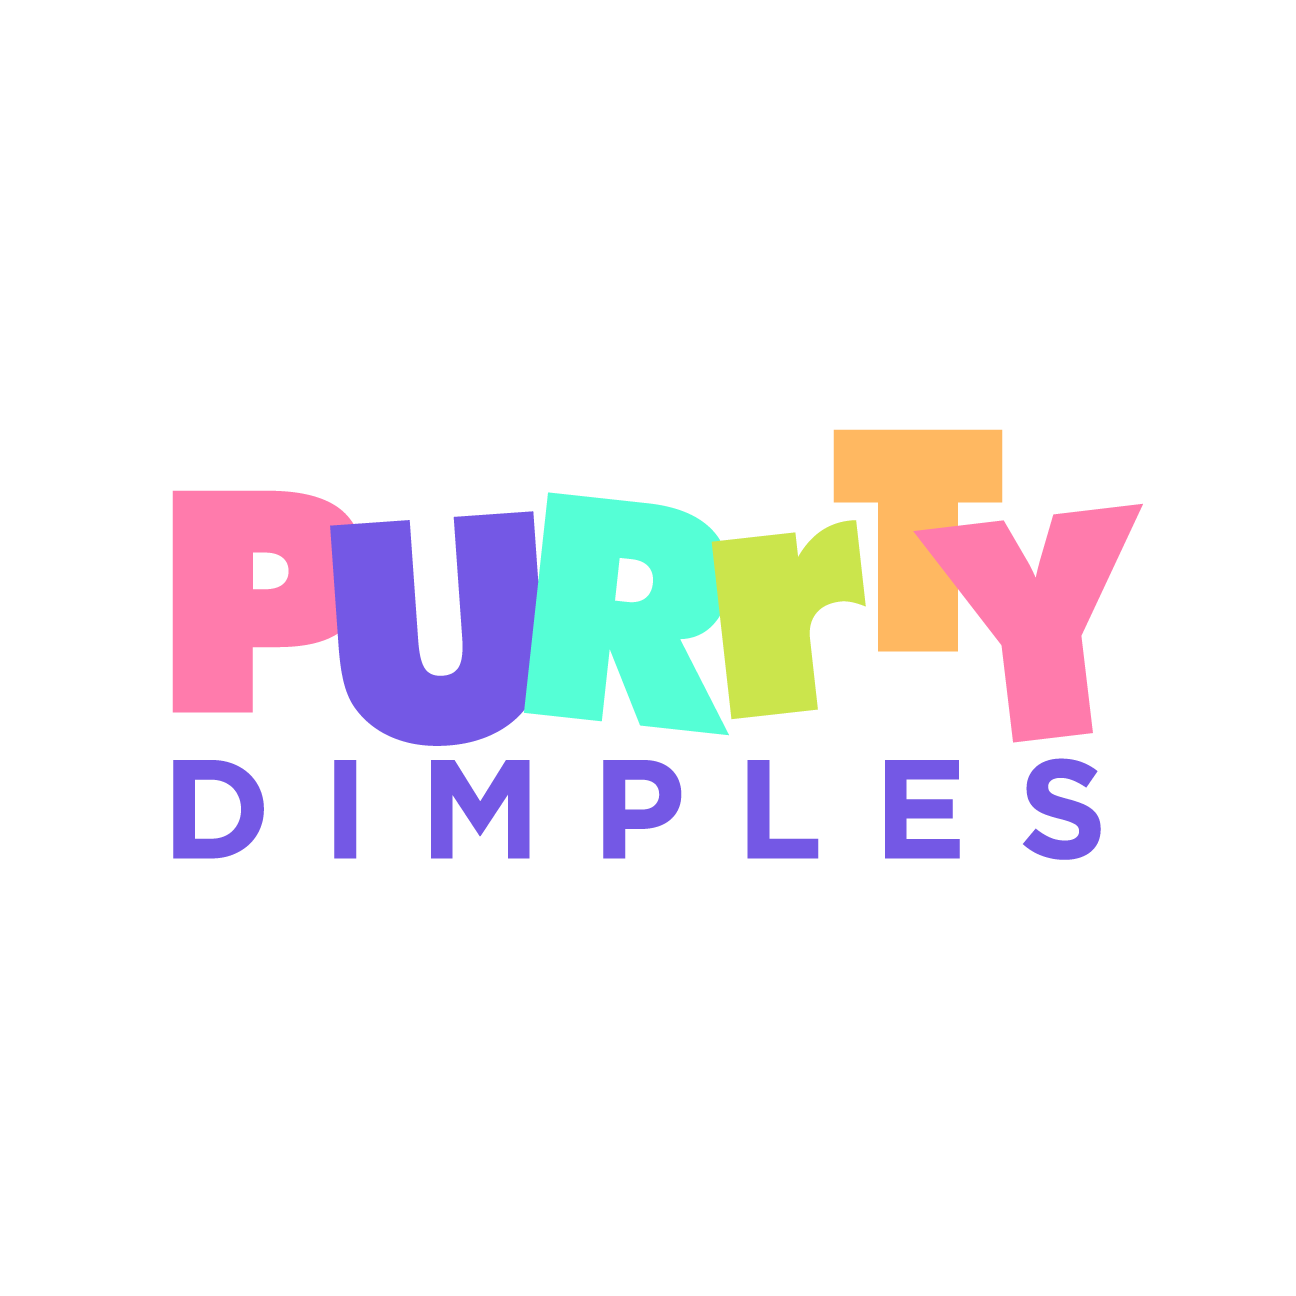 Original Purrty Bonnet – Purrty Dimples